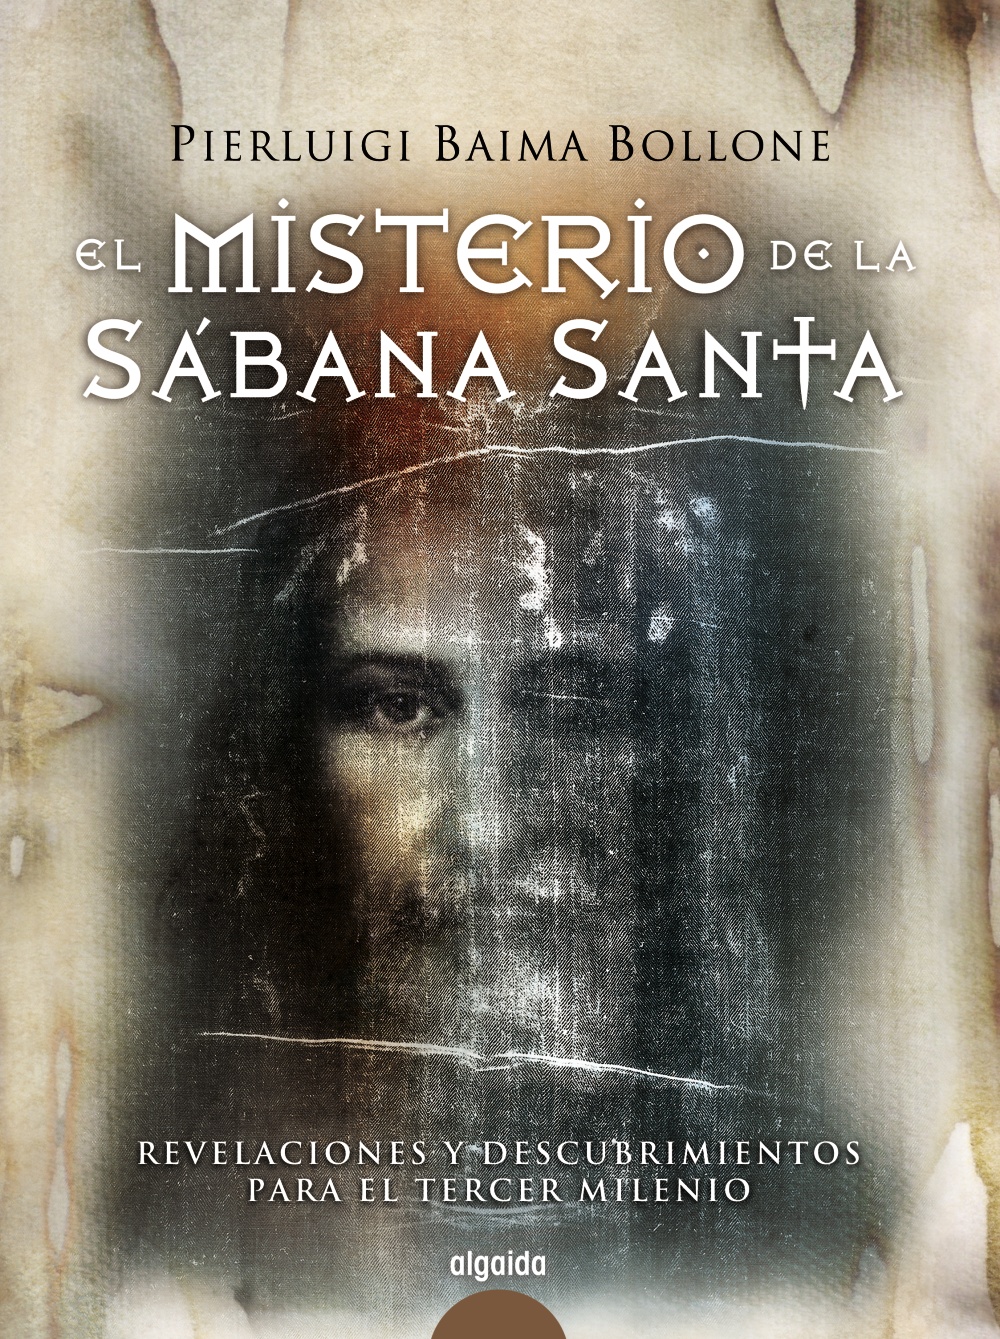 Libro de audio El Misterio de la Sábana Santa – Pierluigi Baima Bollone